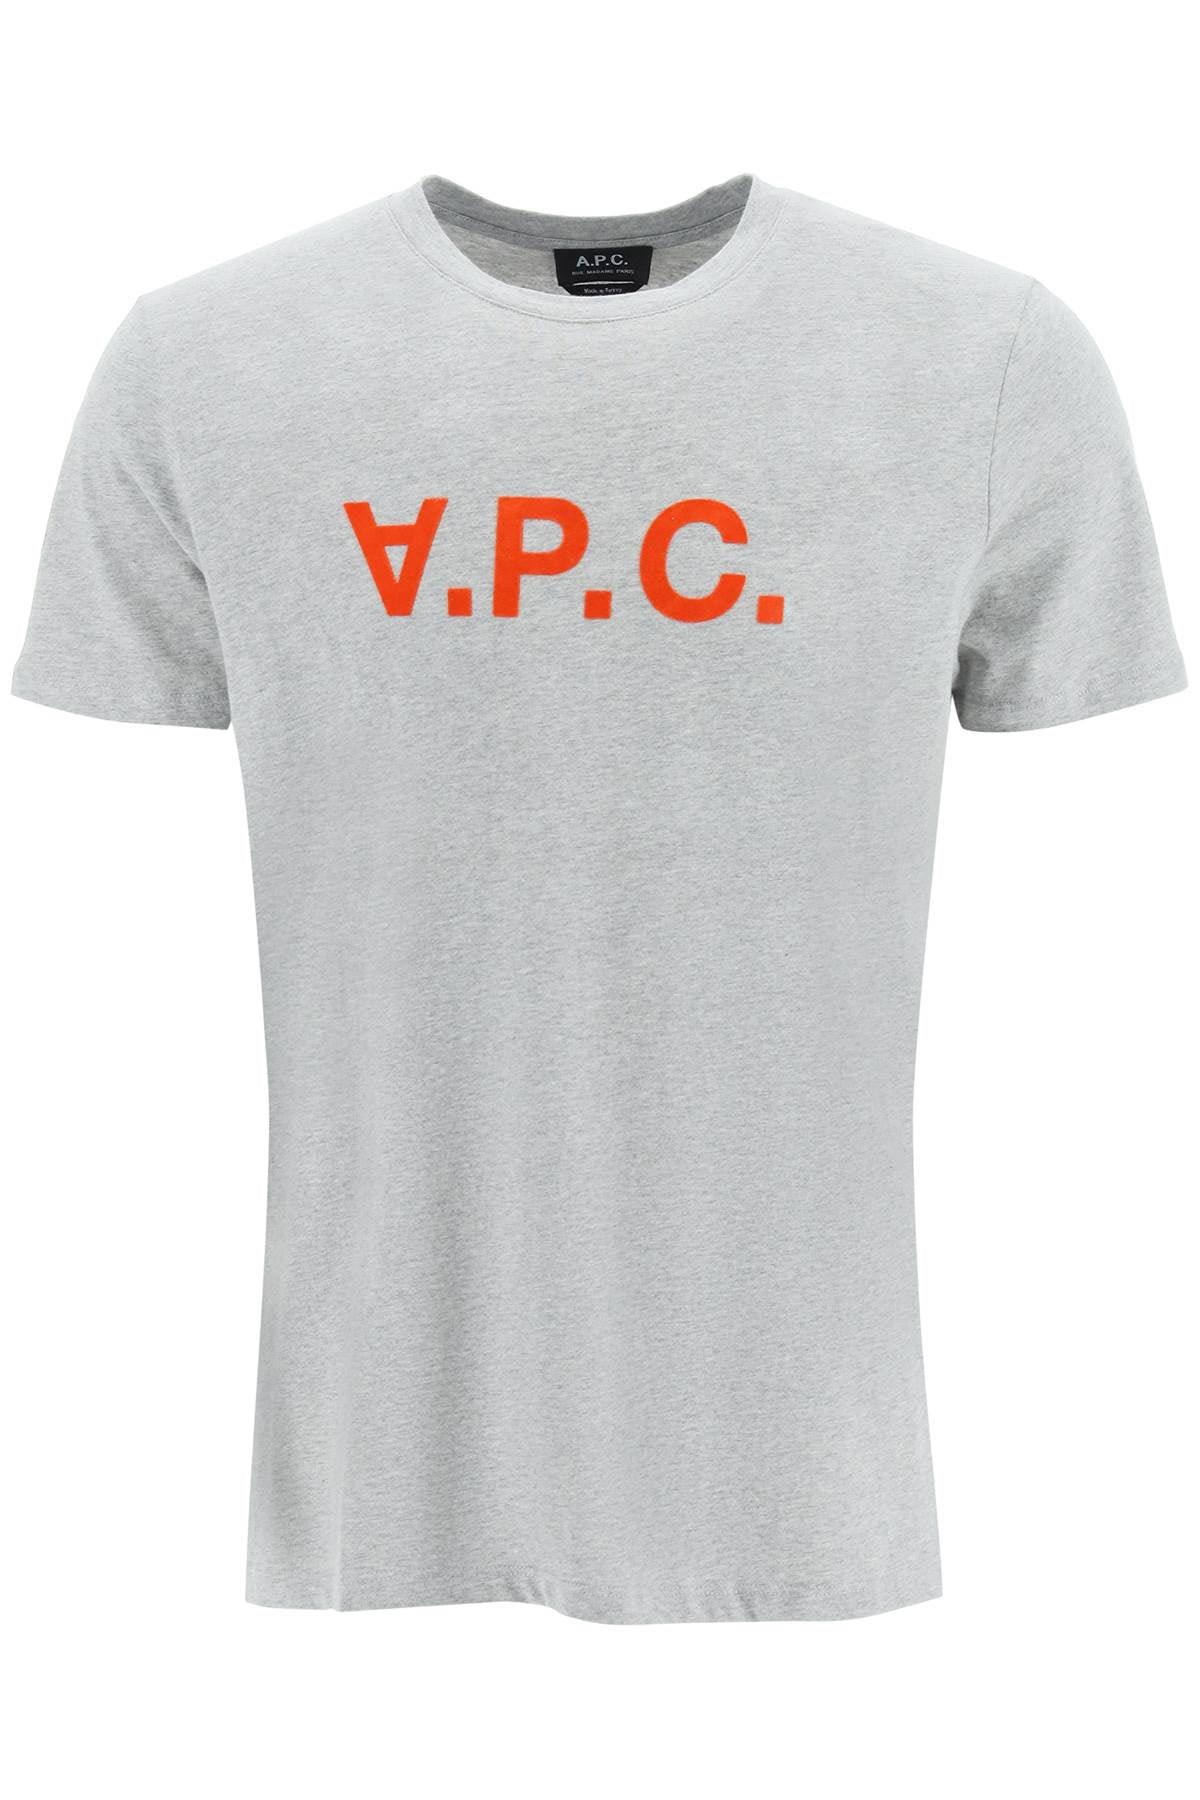 A.P.C-T Shirt Logo Floccato-Uomo